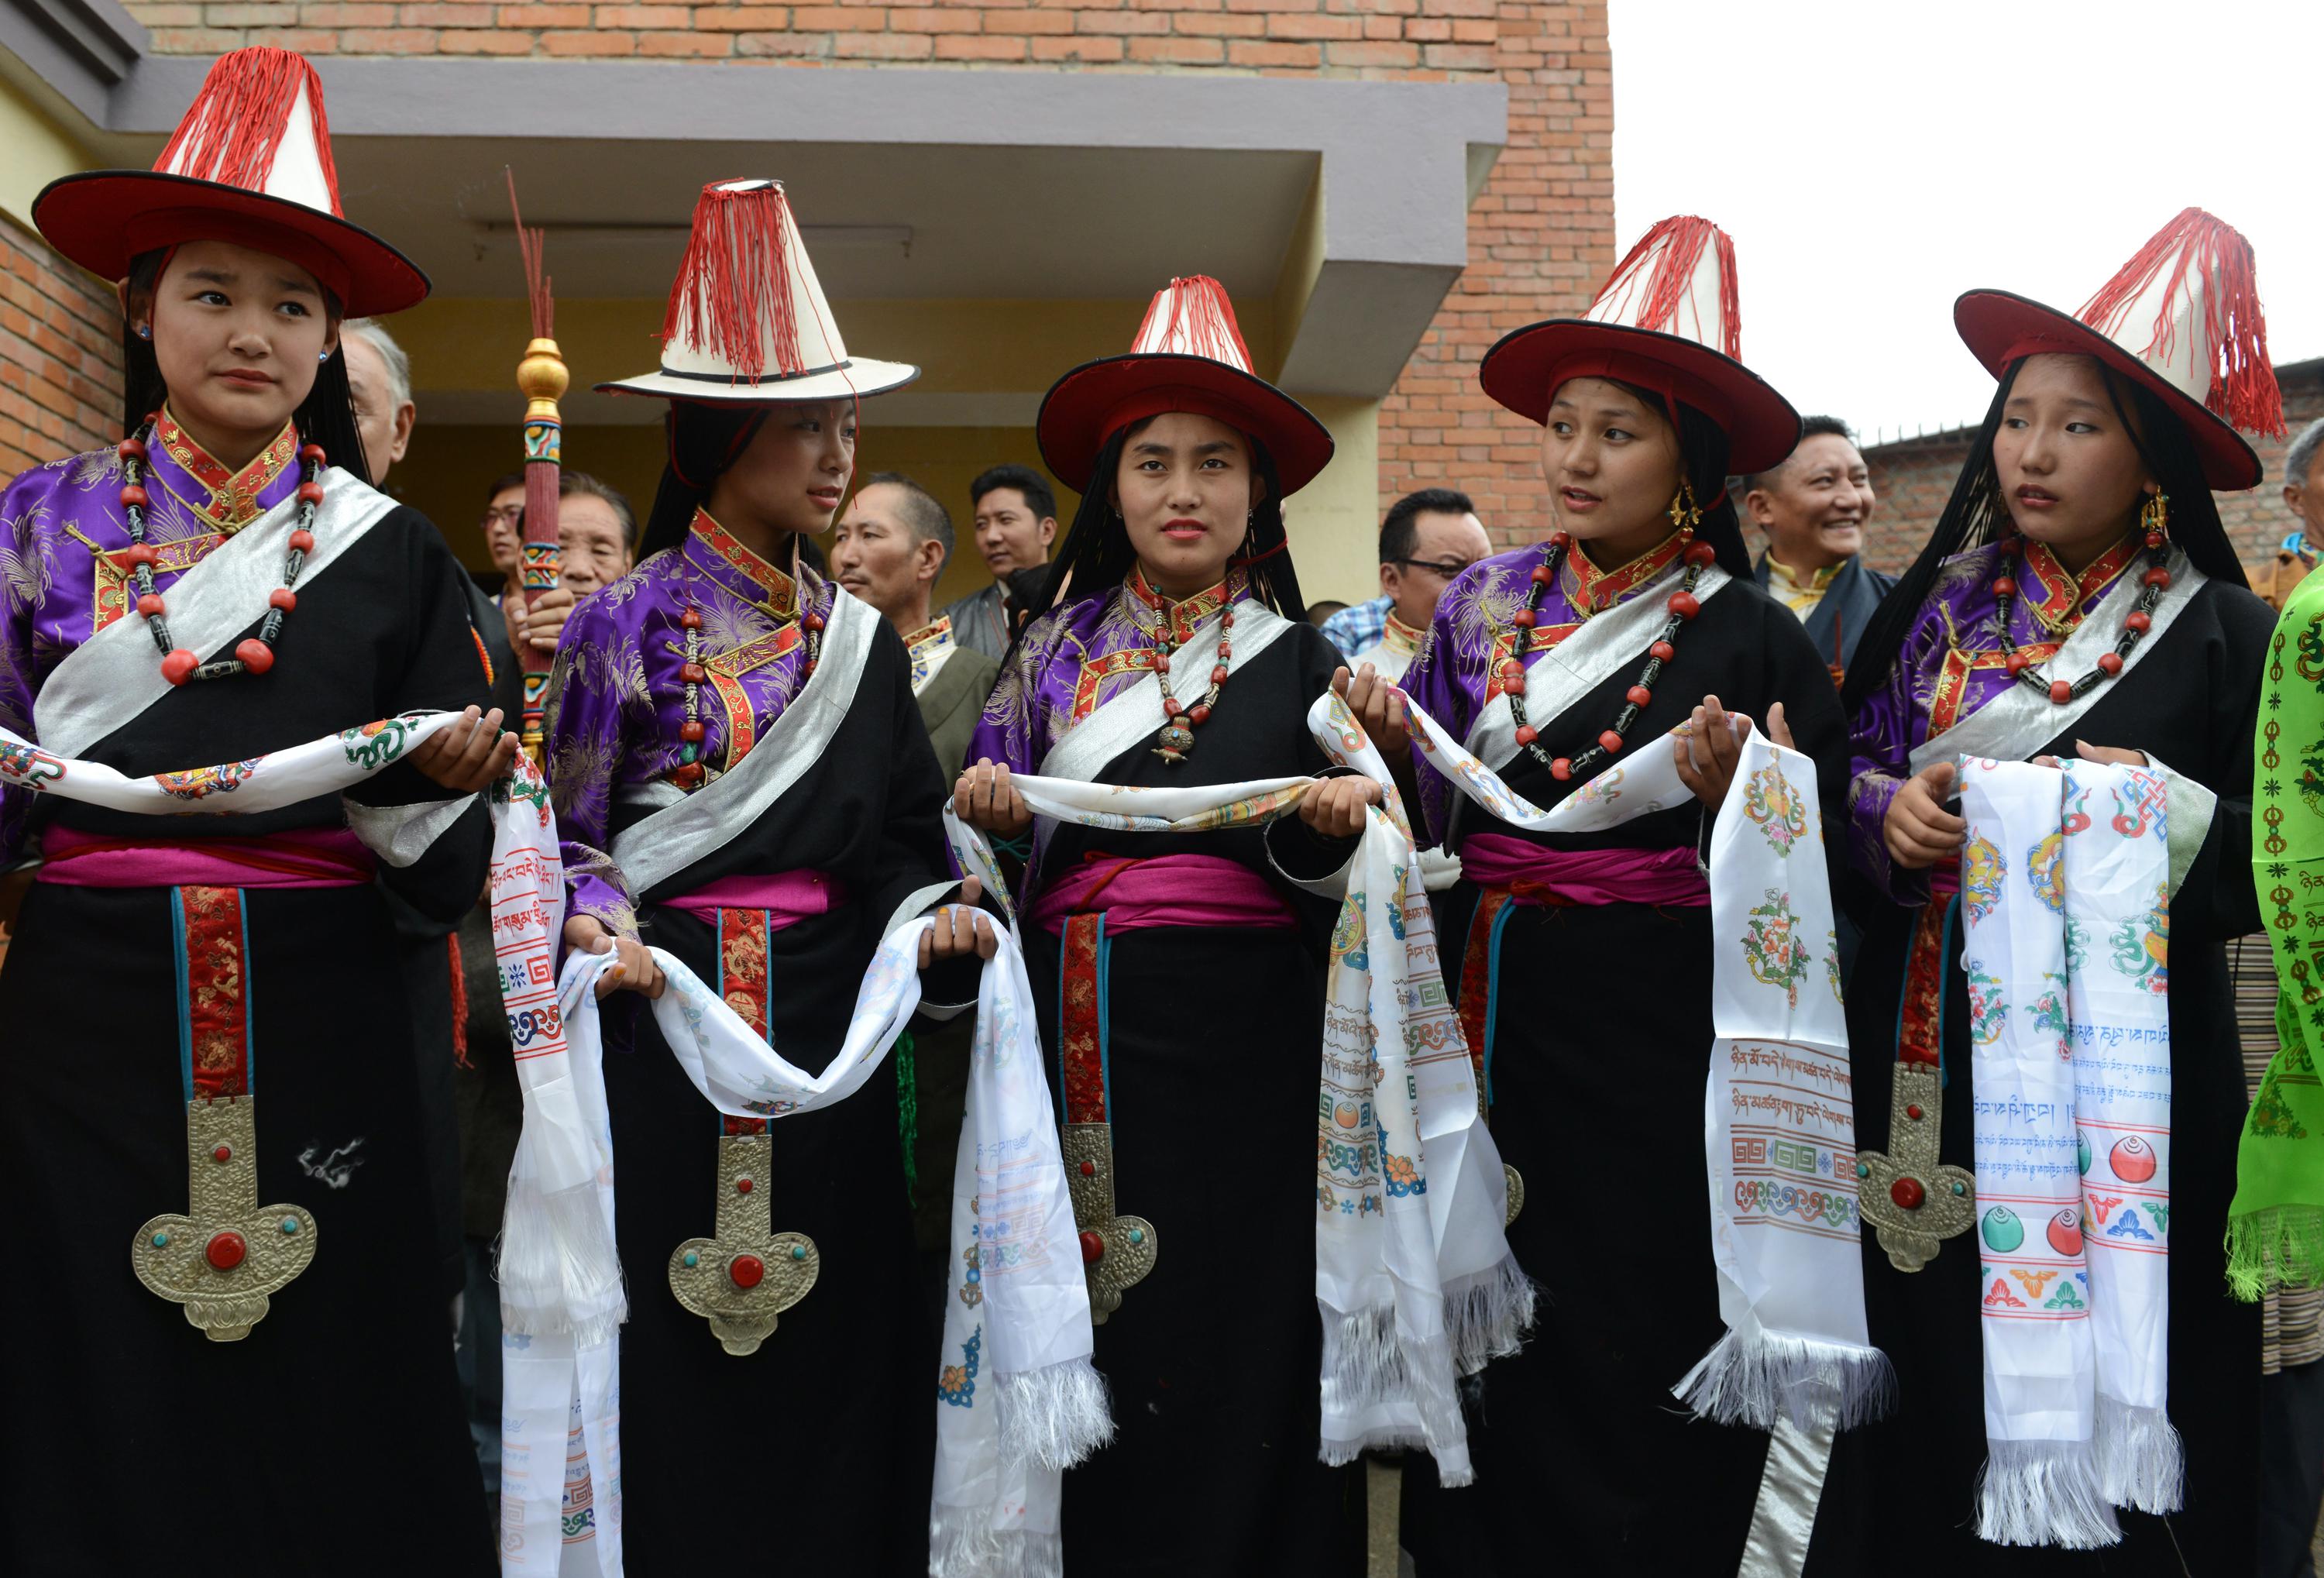 I festeggiamenti in occasione dell'80esimo compleanno del Dalai Lama alla Scuola Namgyal a Kathmandu, dove si sono riuniti migliaia di tibetani in esilio (AFP)